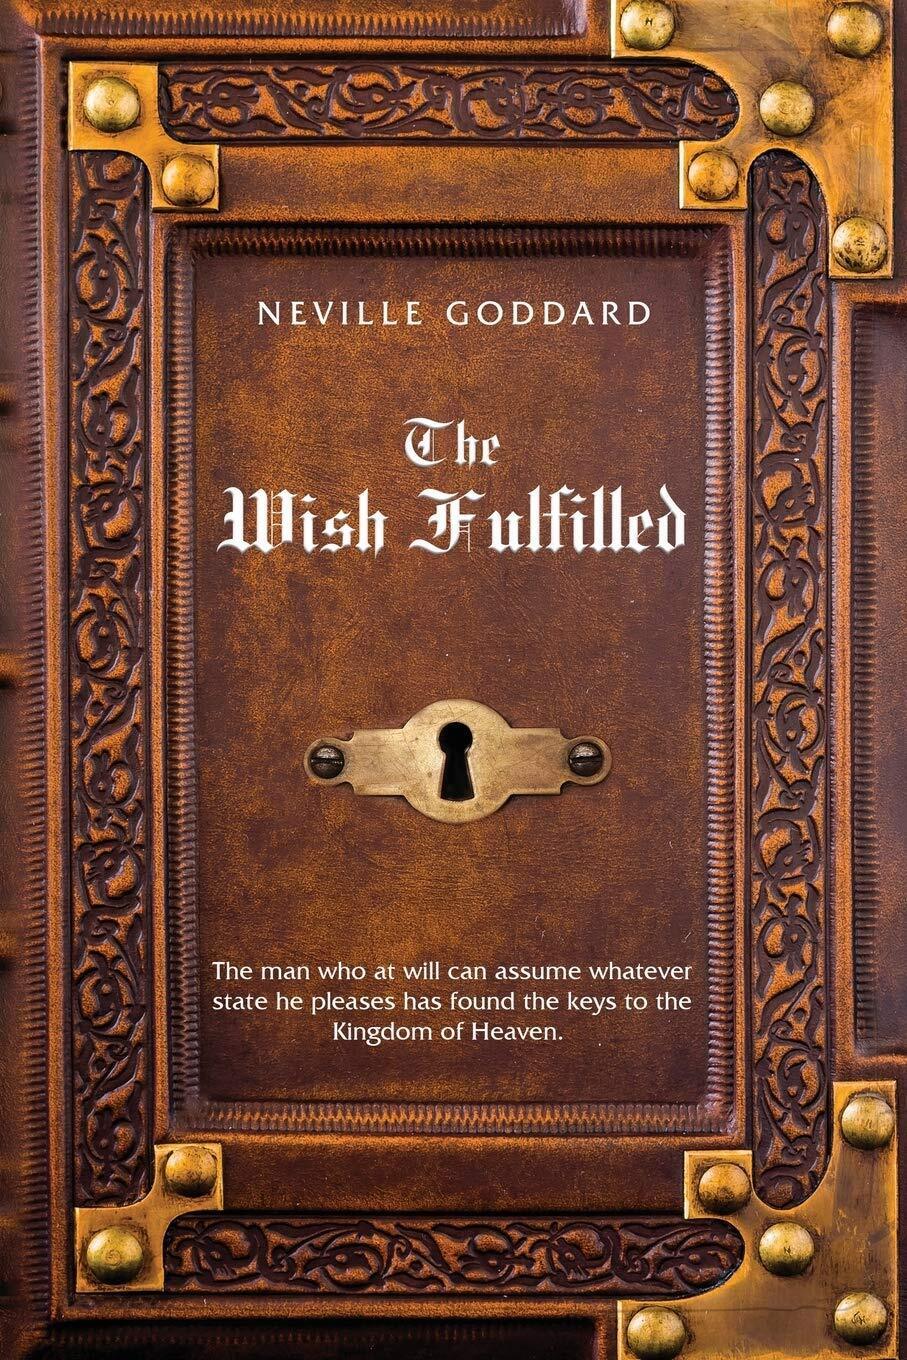 Neville Goddard The Wish Fulfilled - Neville Goddard - Shanon Allen, 2020